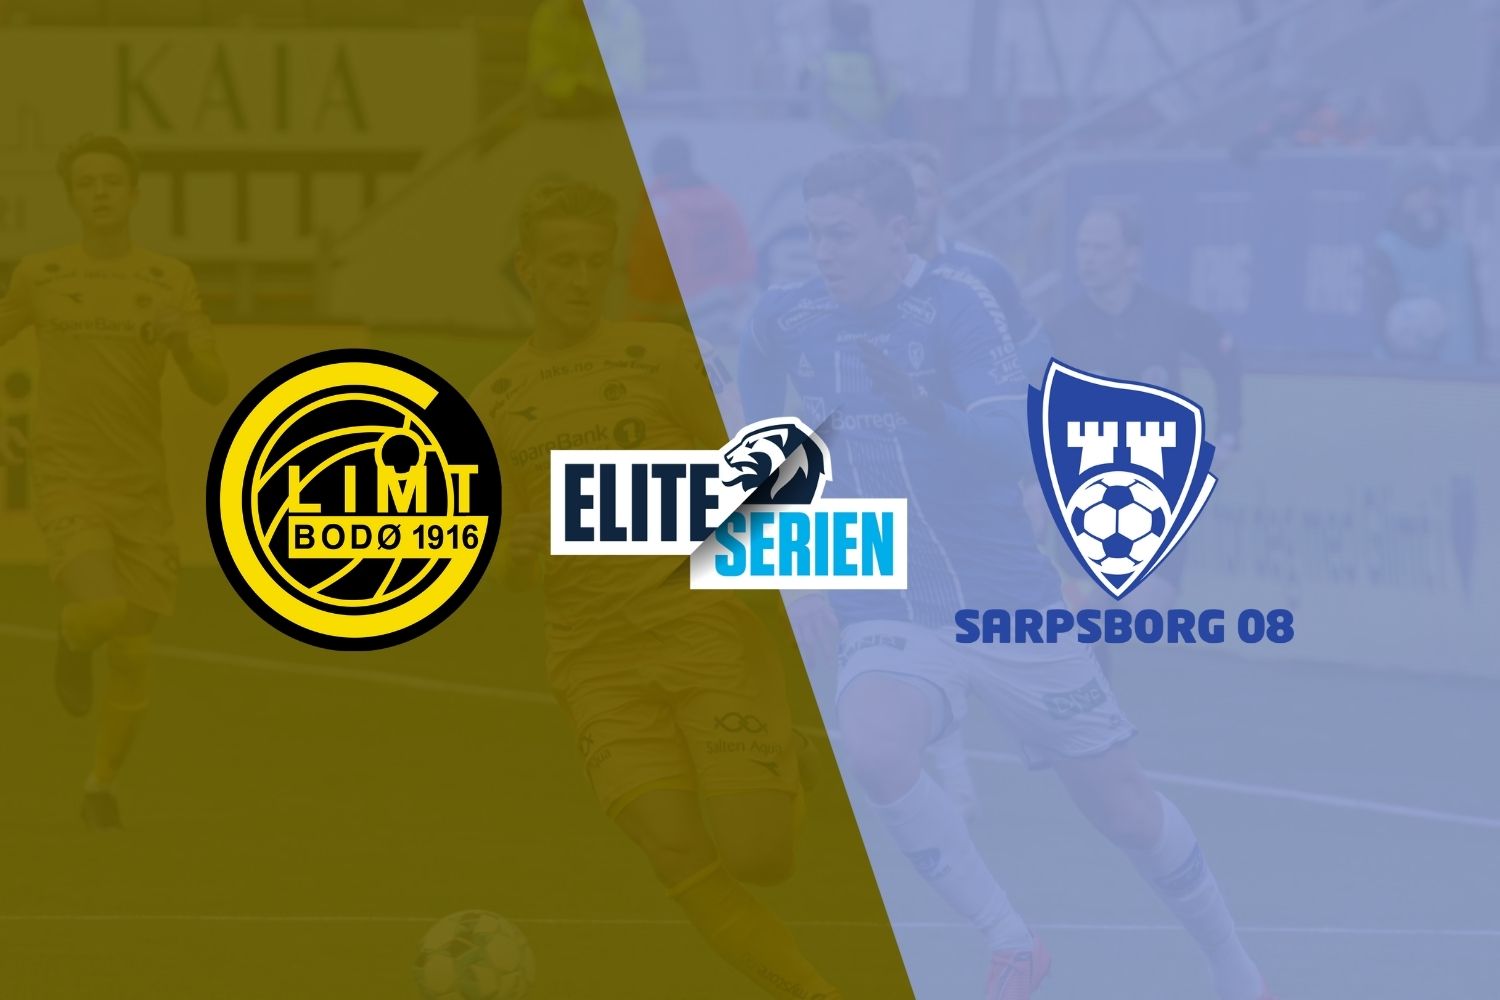 Bodo/Glimt vs Sarpsborg match preview & prediction 